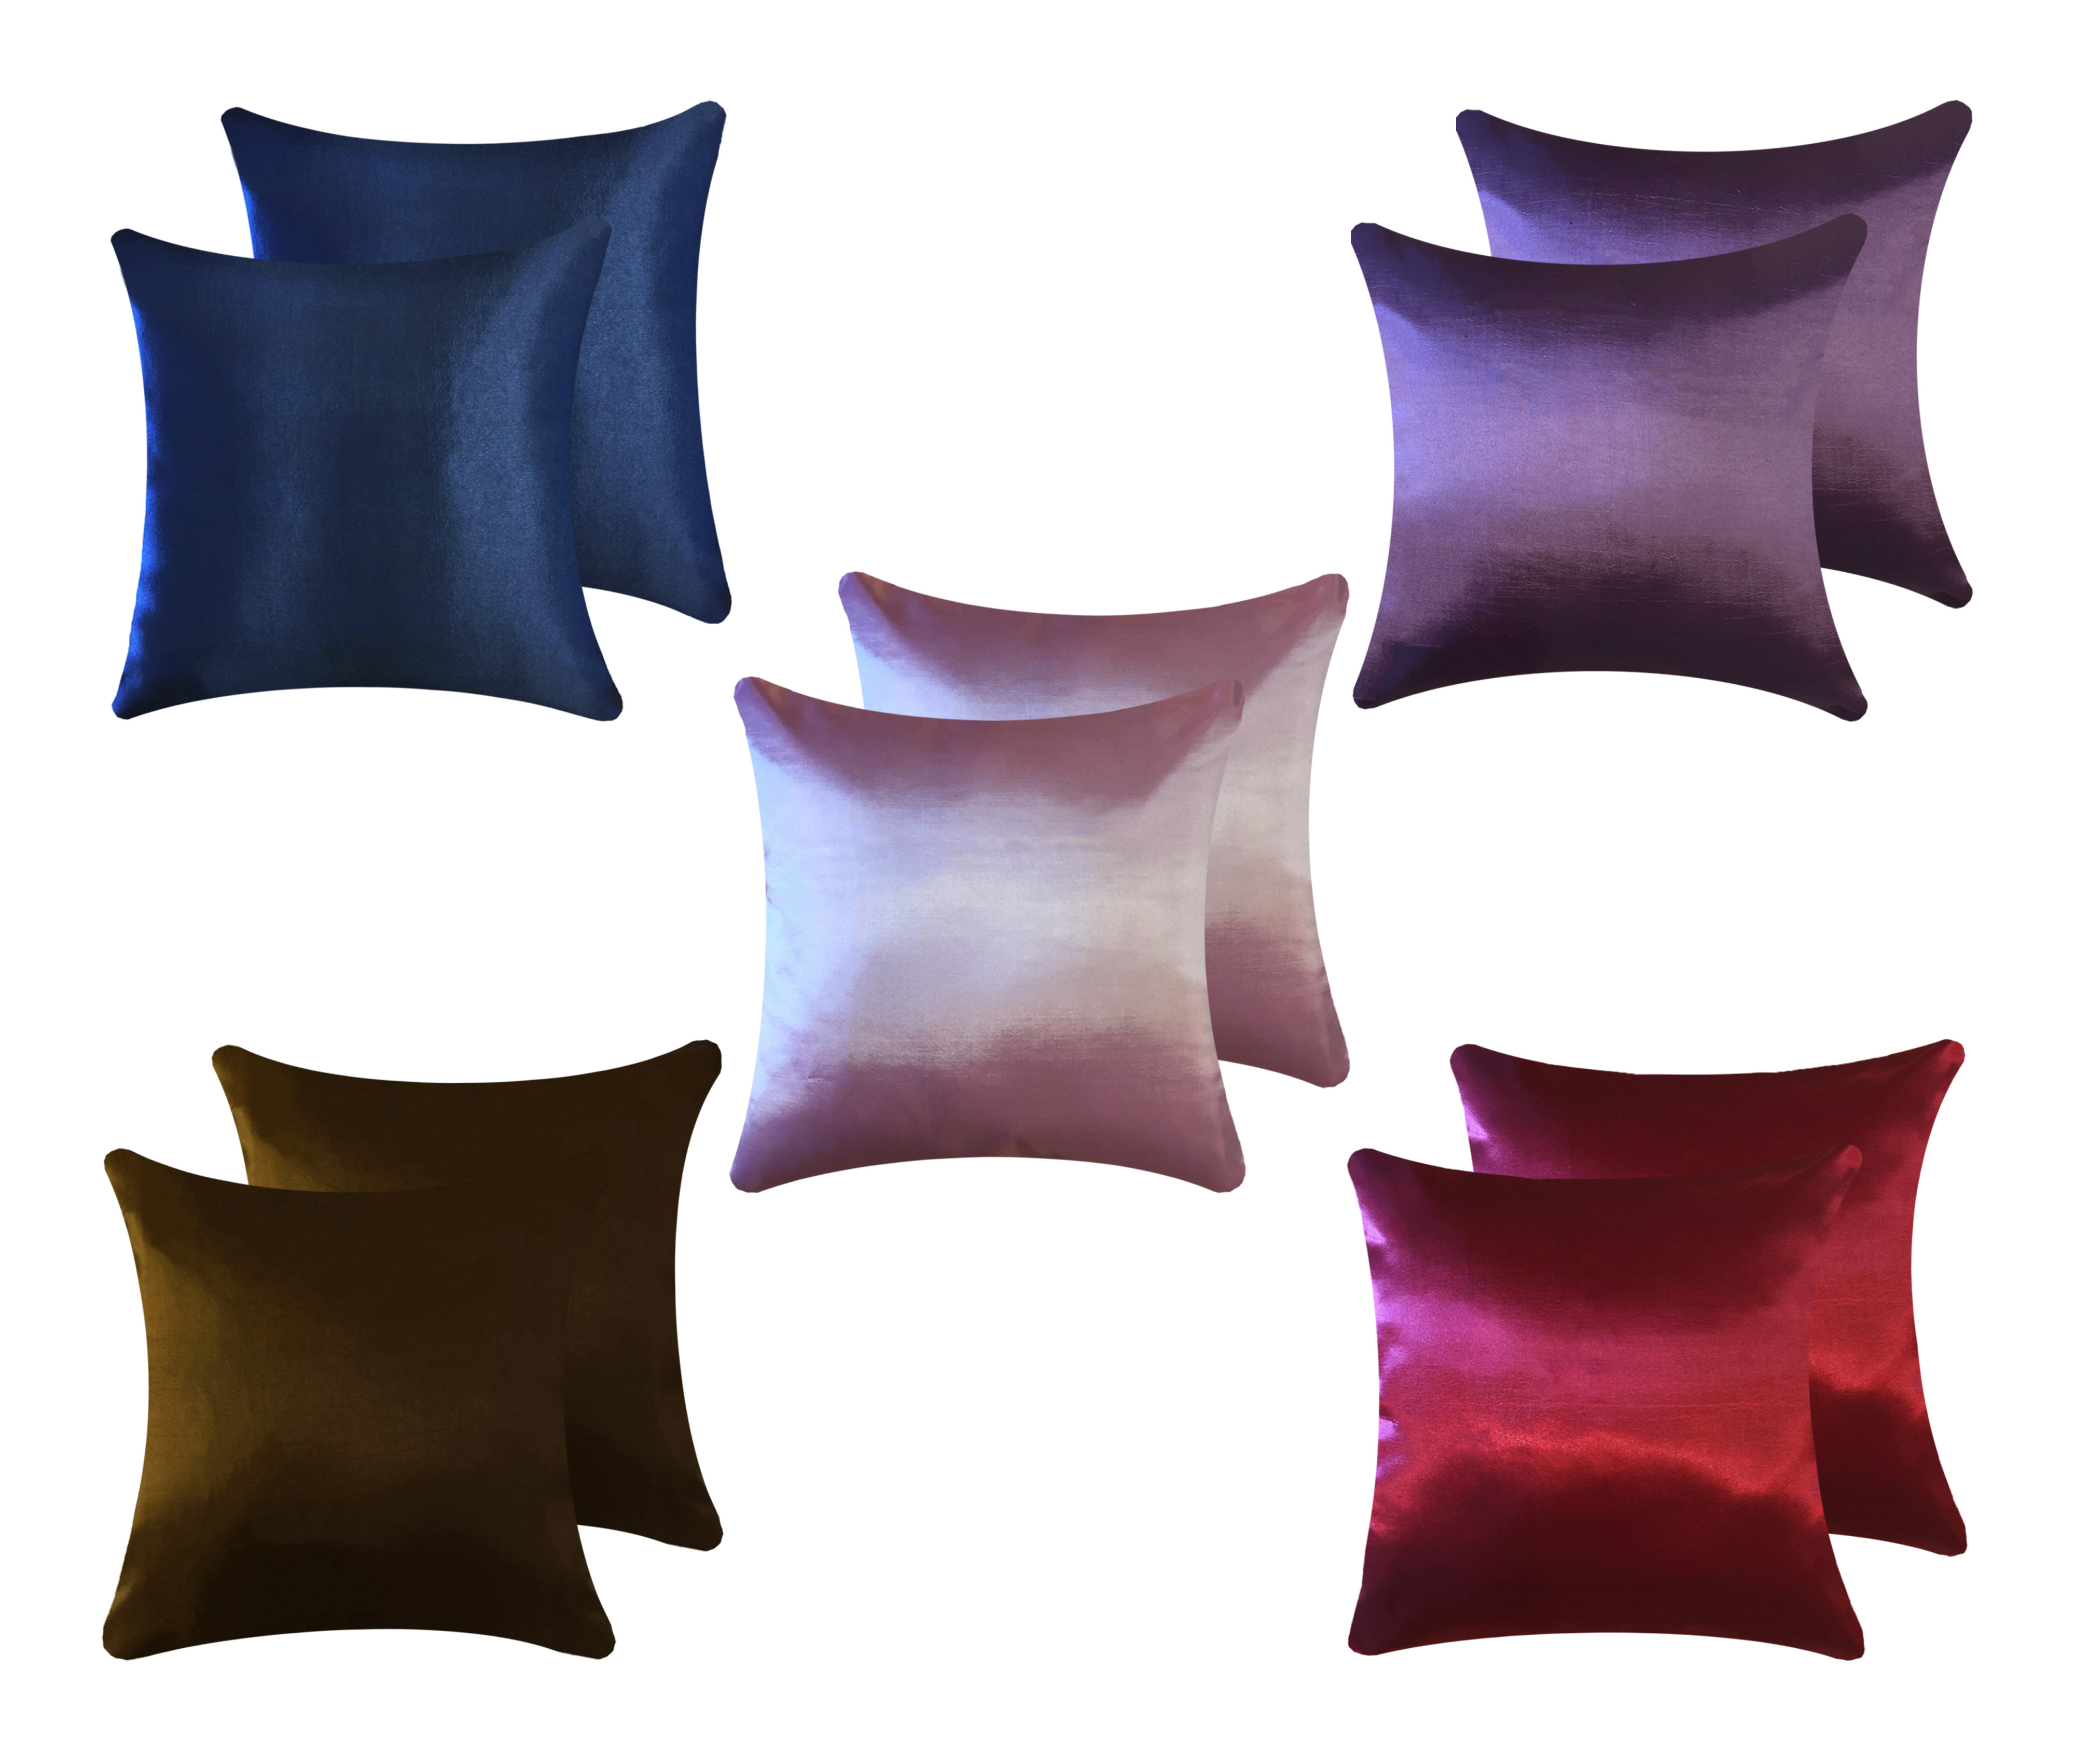 ปลอกหมอนอิง ปลอกหมอนอิงผ้าไหมสีพื้นขนาด 16*16 นิ้ว/40*40 ซม. จำนวน 2 ใบ /Cushion cover 2 pieces of solid color silk cushion cover, size 16*16 inches/40*40 cm.